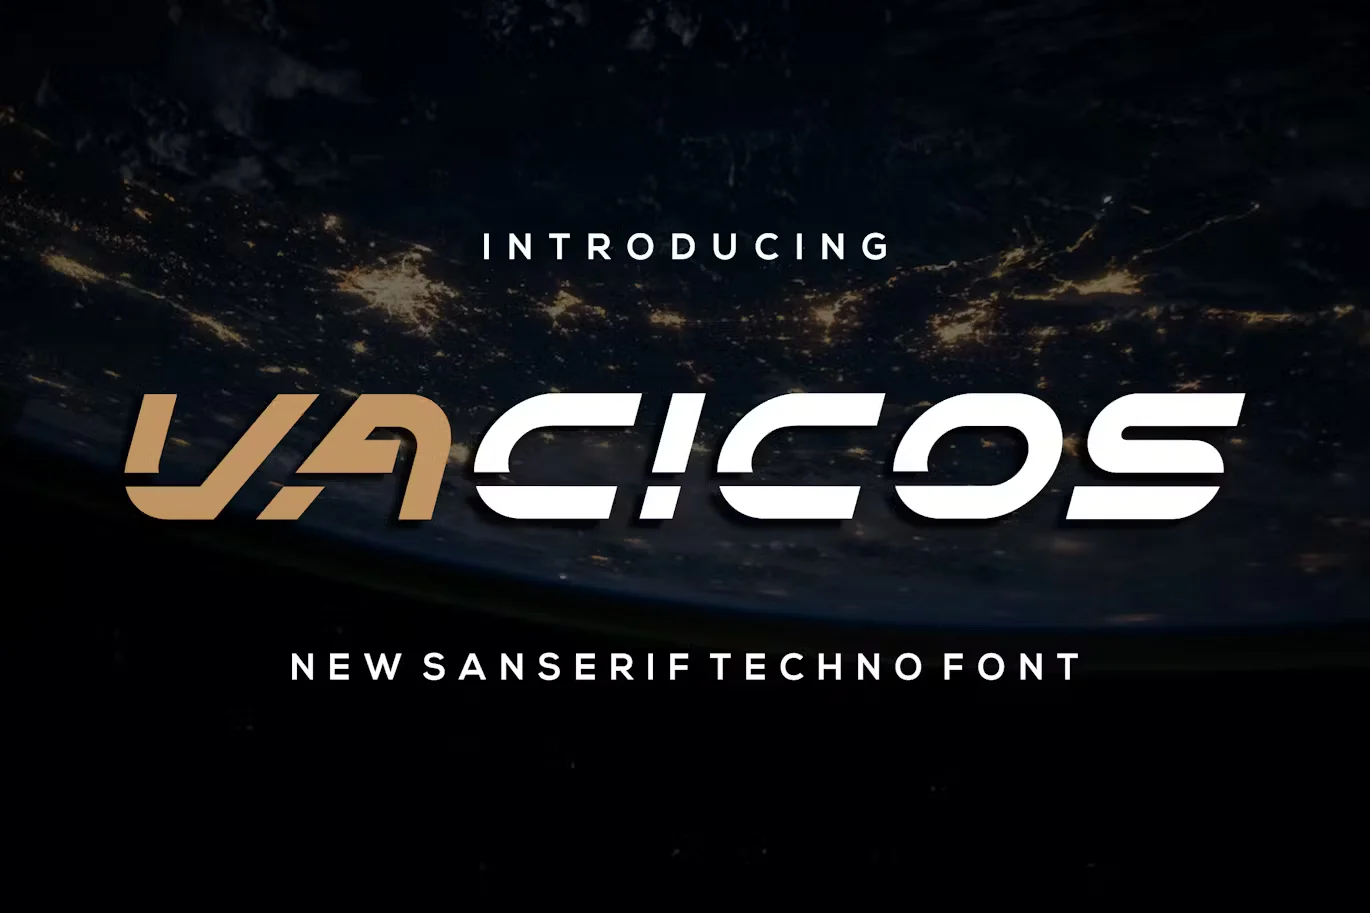 Vacicos - A Futuristic Typeface